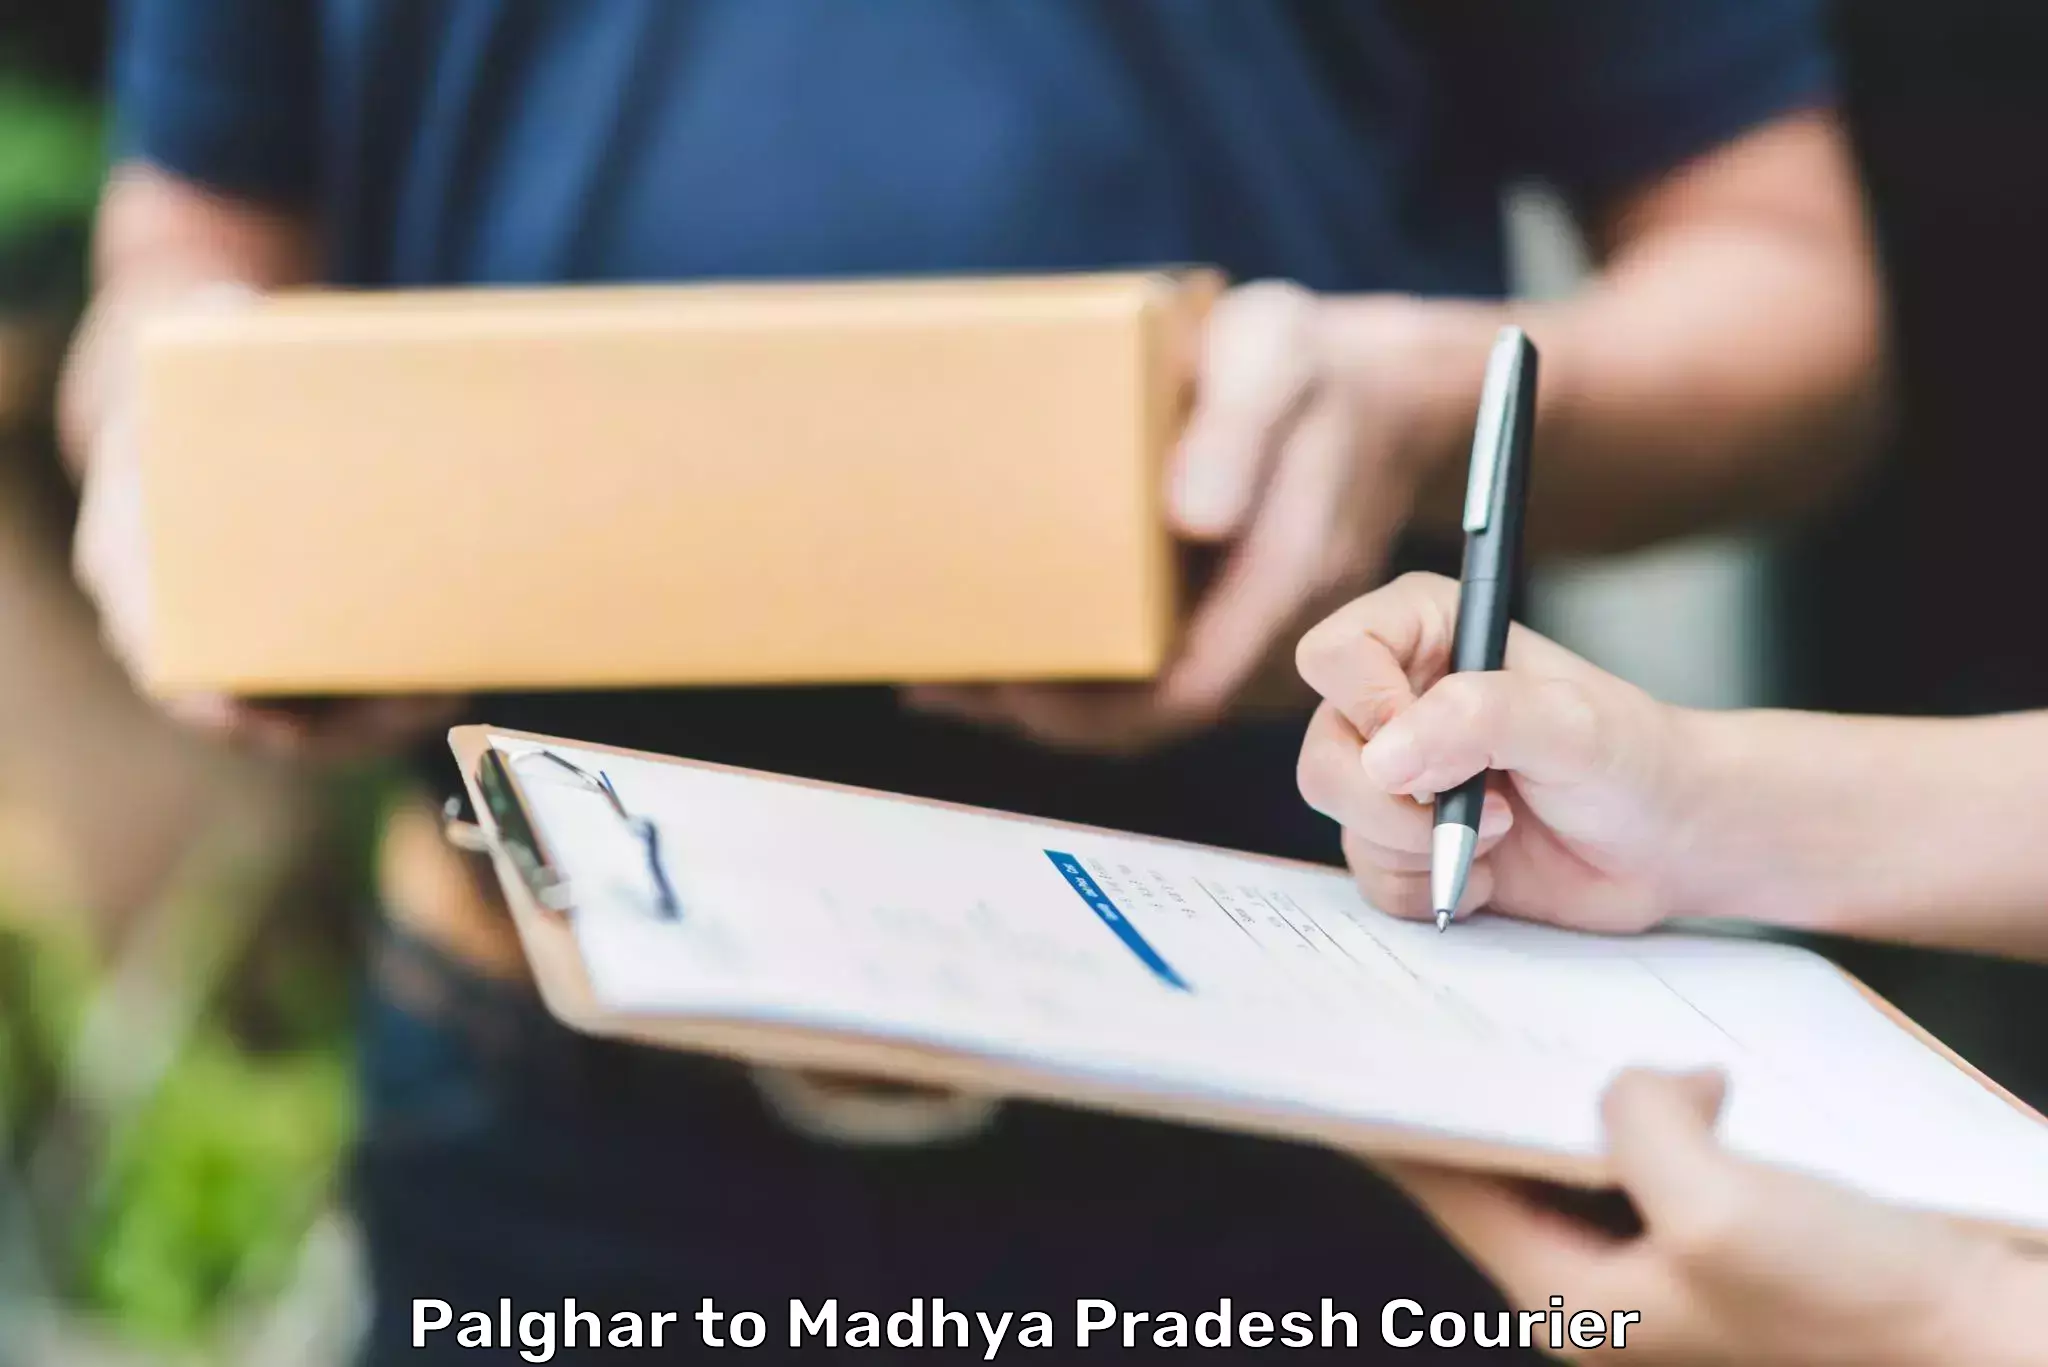 Efficient parcel service Palghar to Petlawad